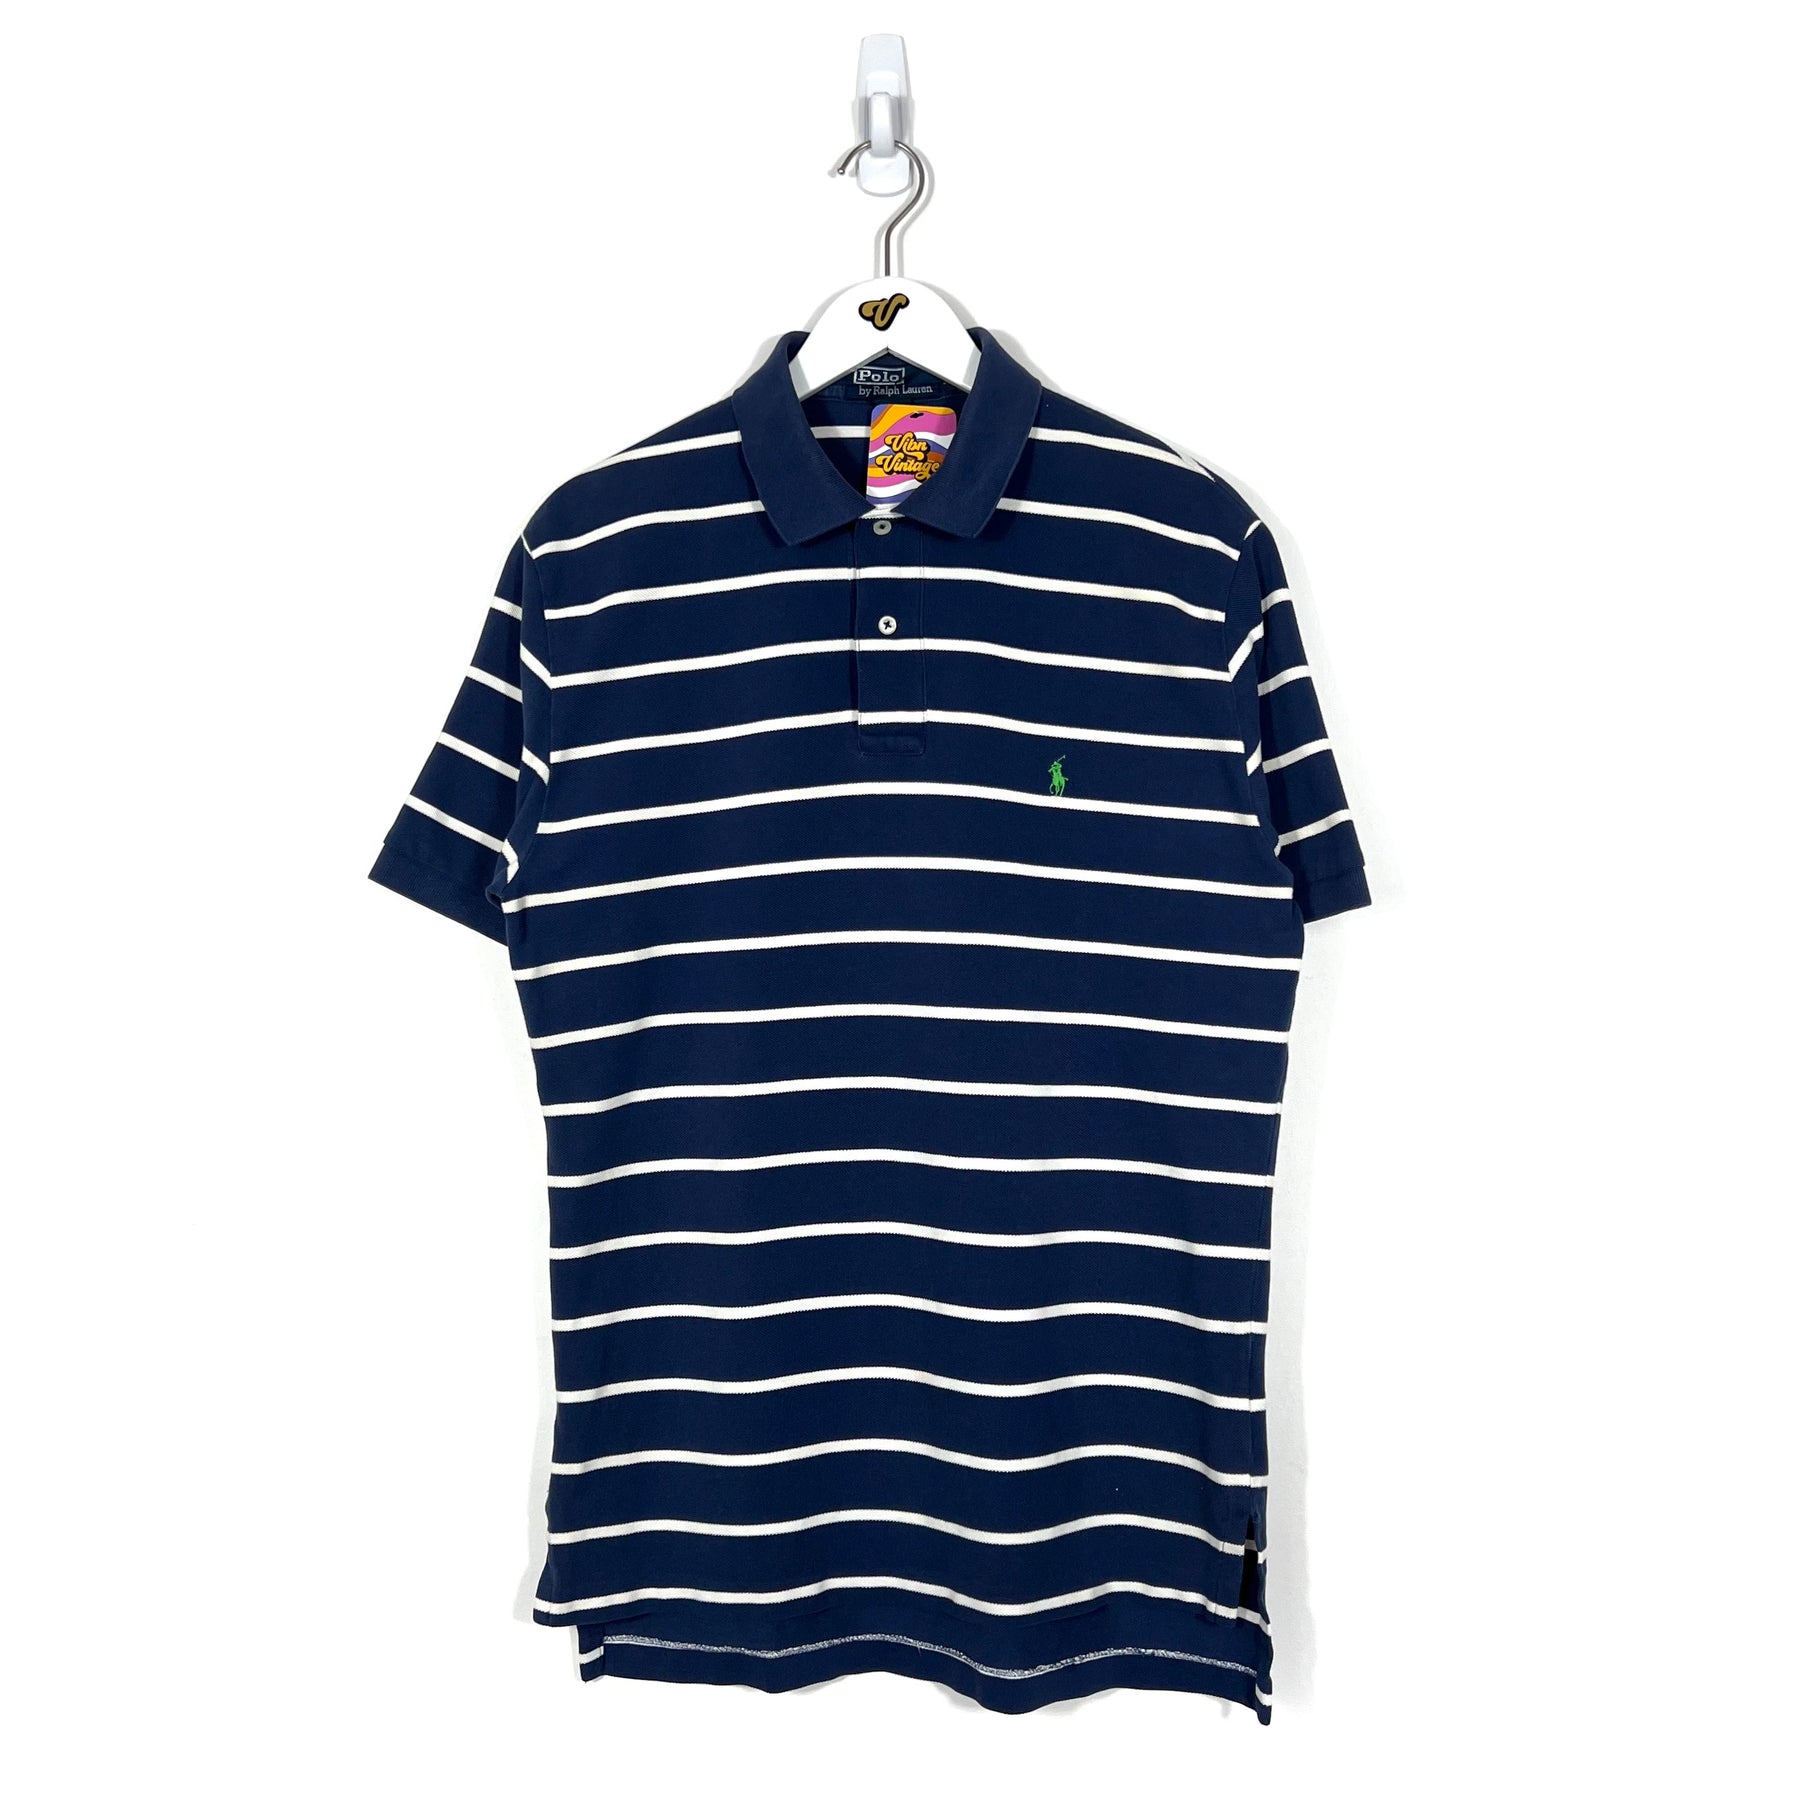 Vintage Polo Sport Polo Shirt - Men's Medium